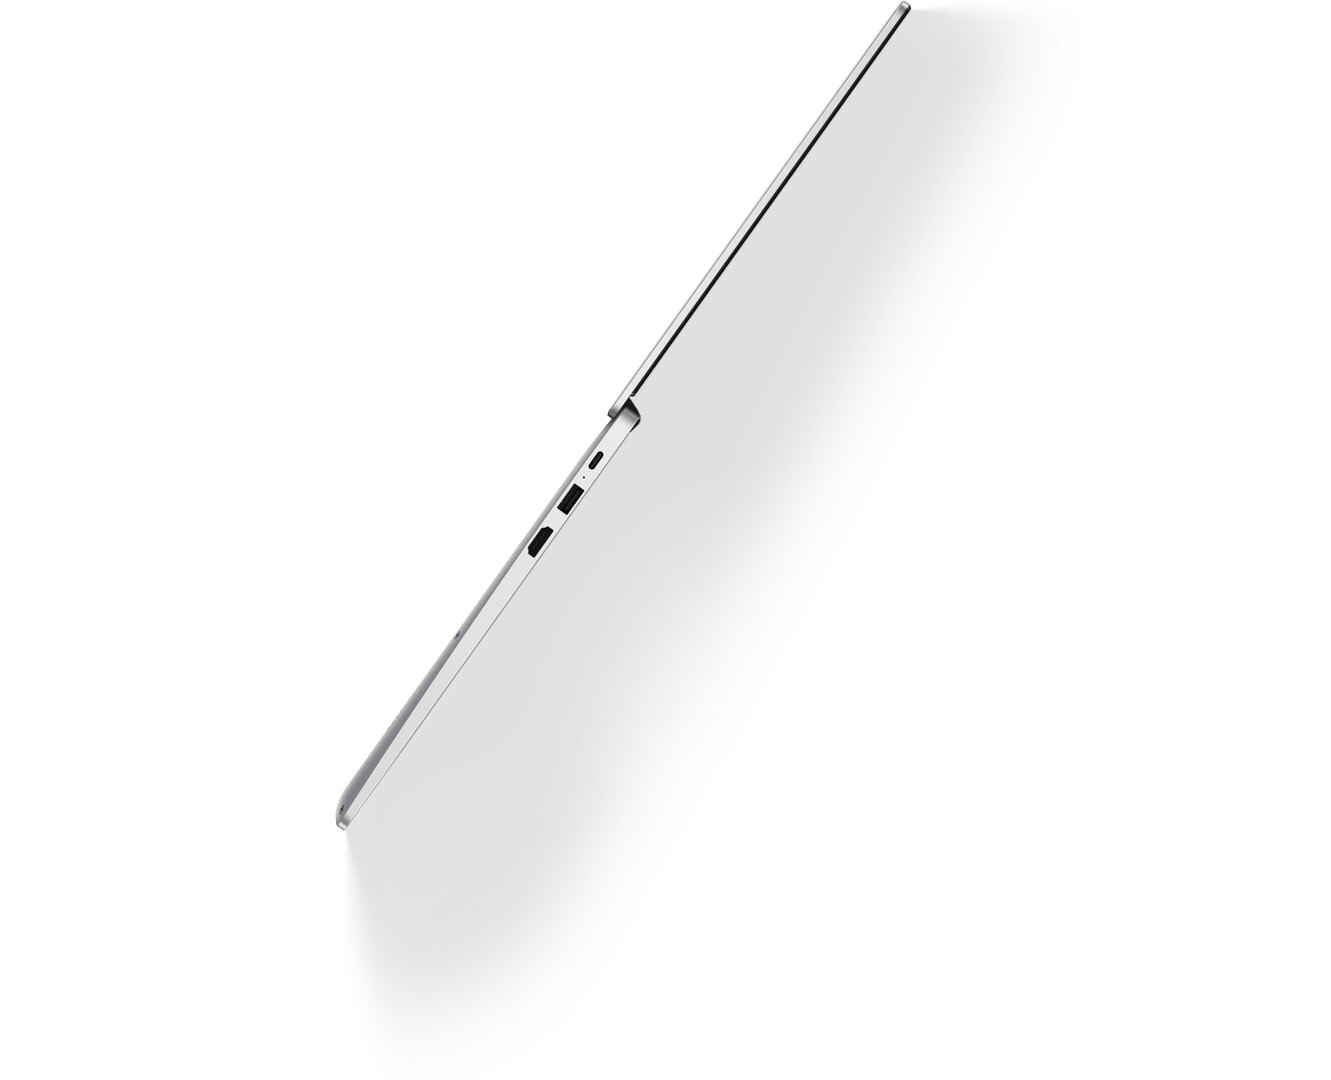 Huawei MateBook D14